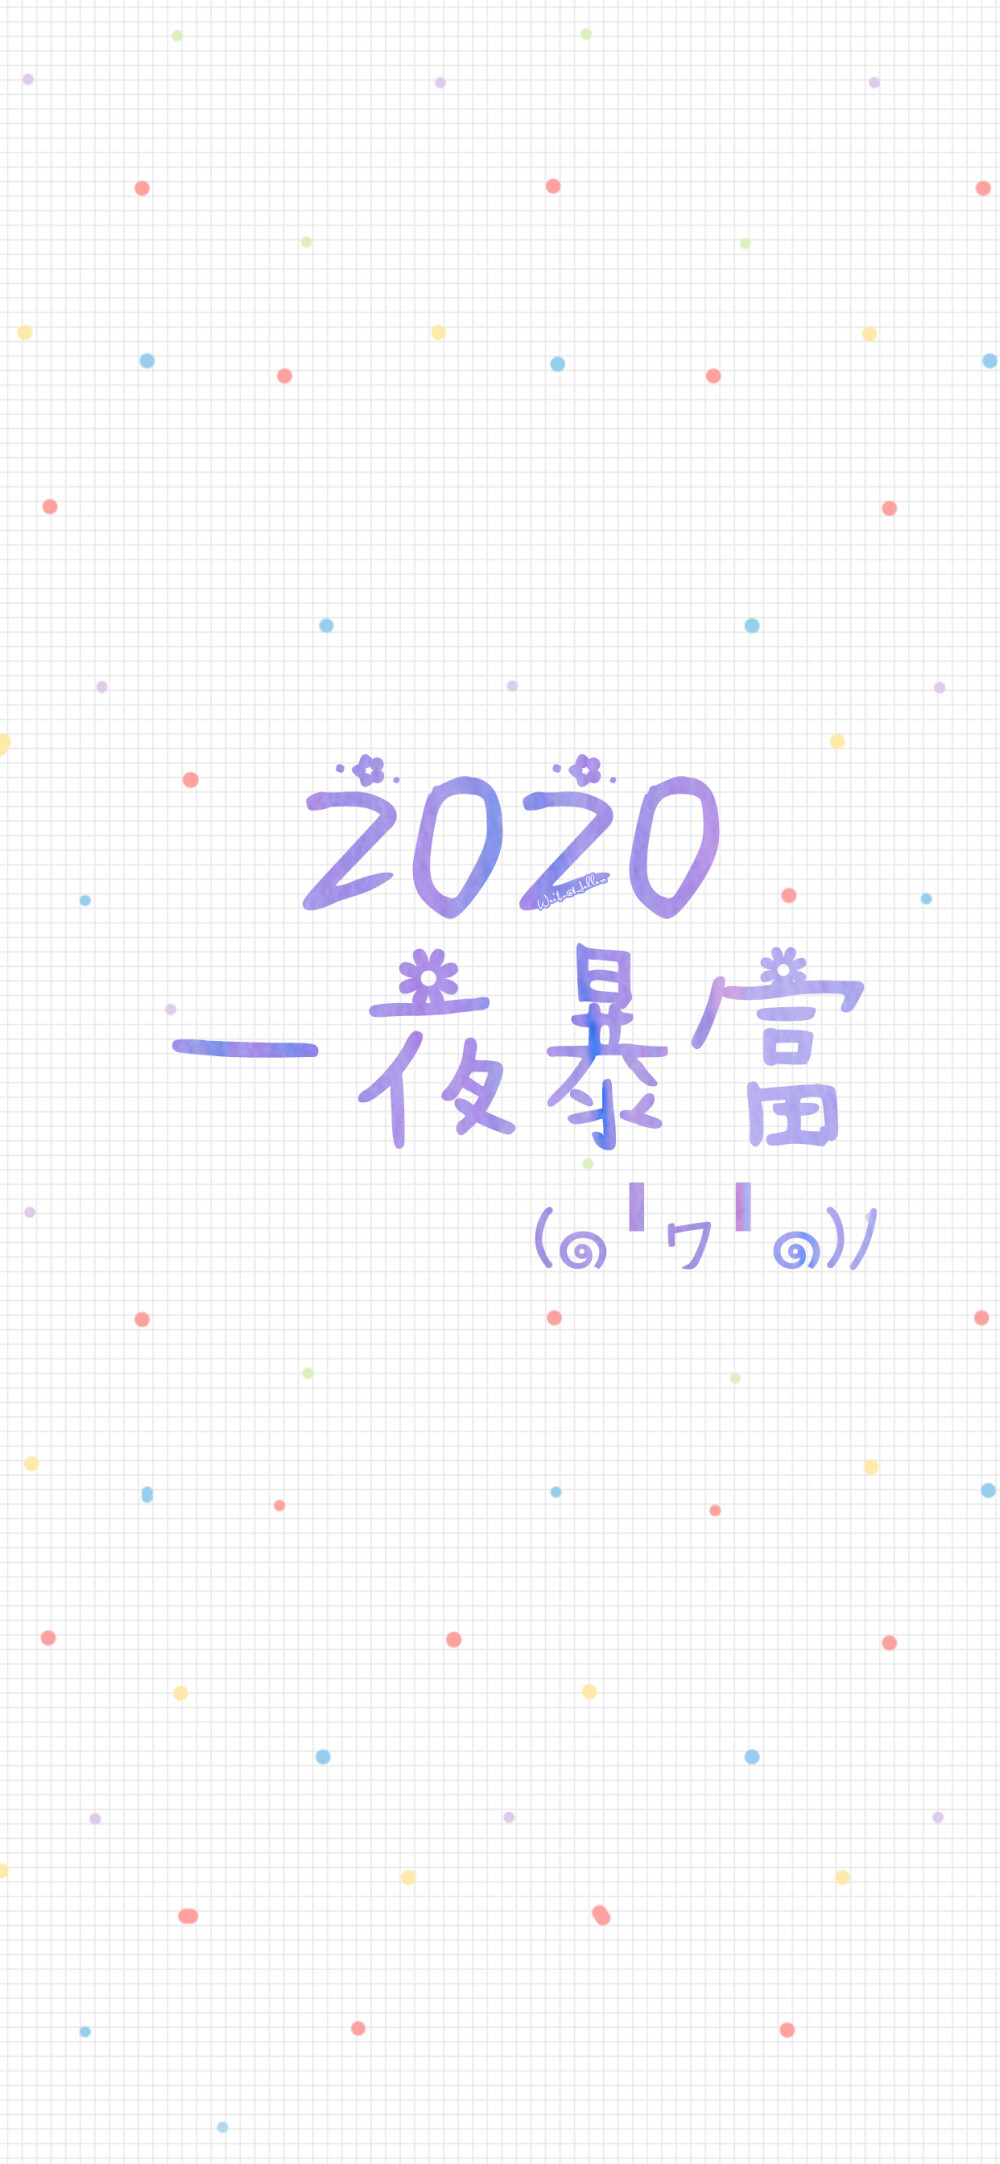 2020新年快乐/2020好好生活/2020未来可期/2020锦鲤附体/2020发奋图强